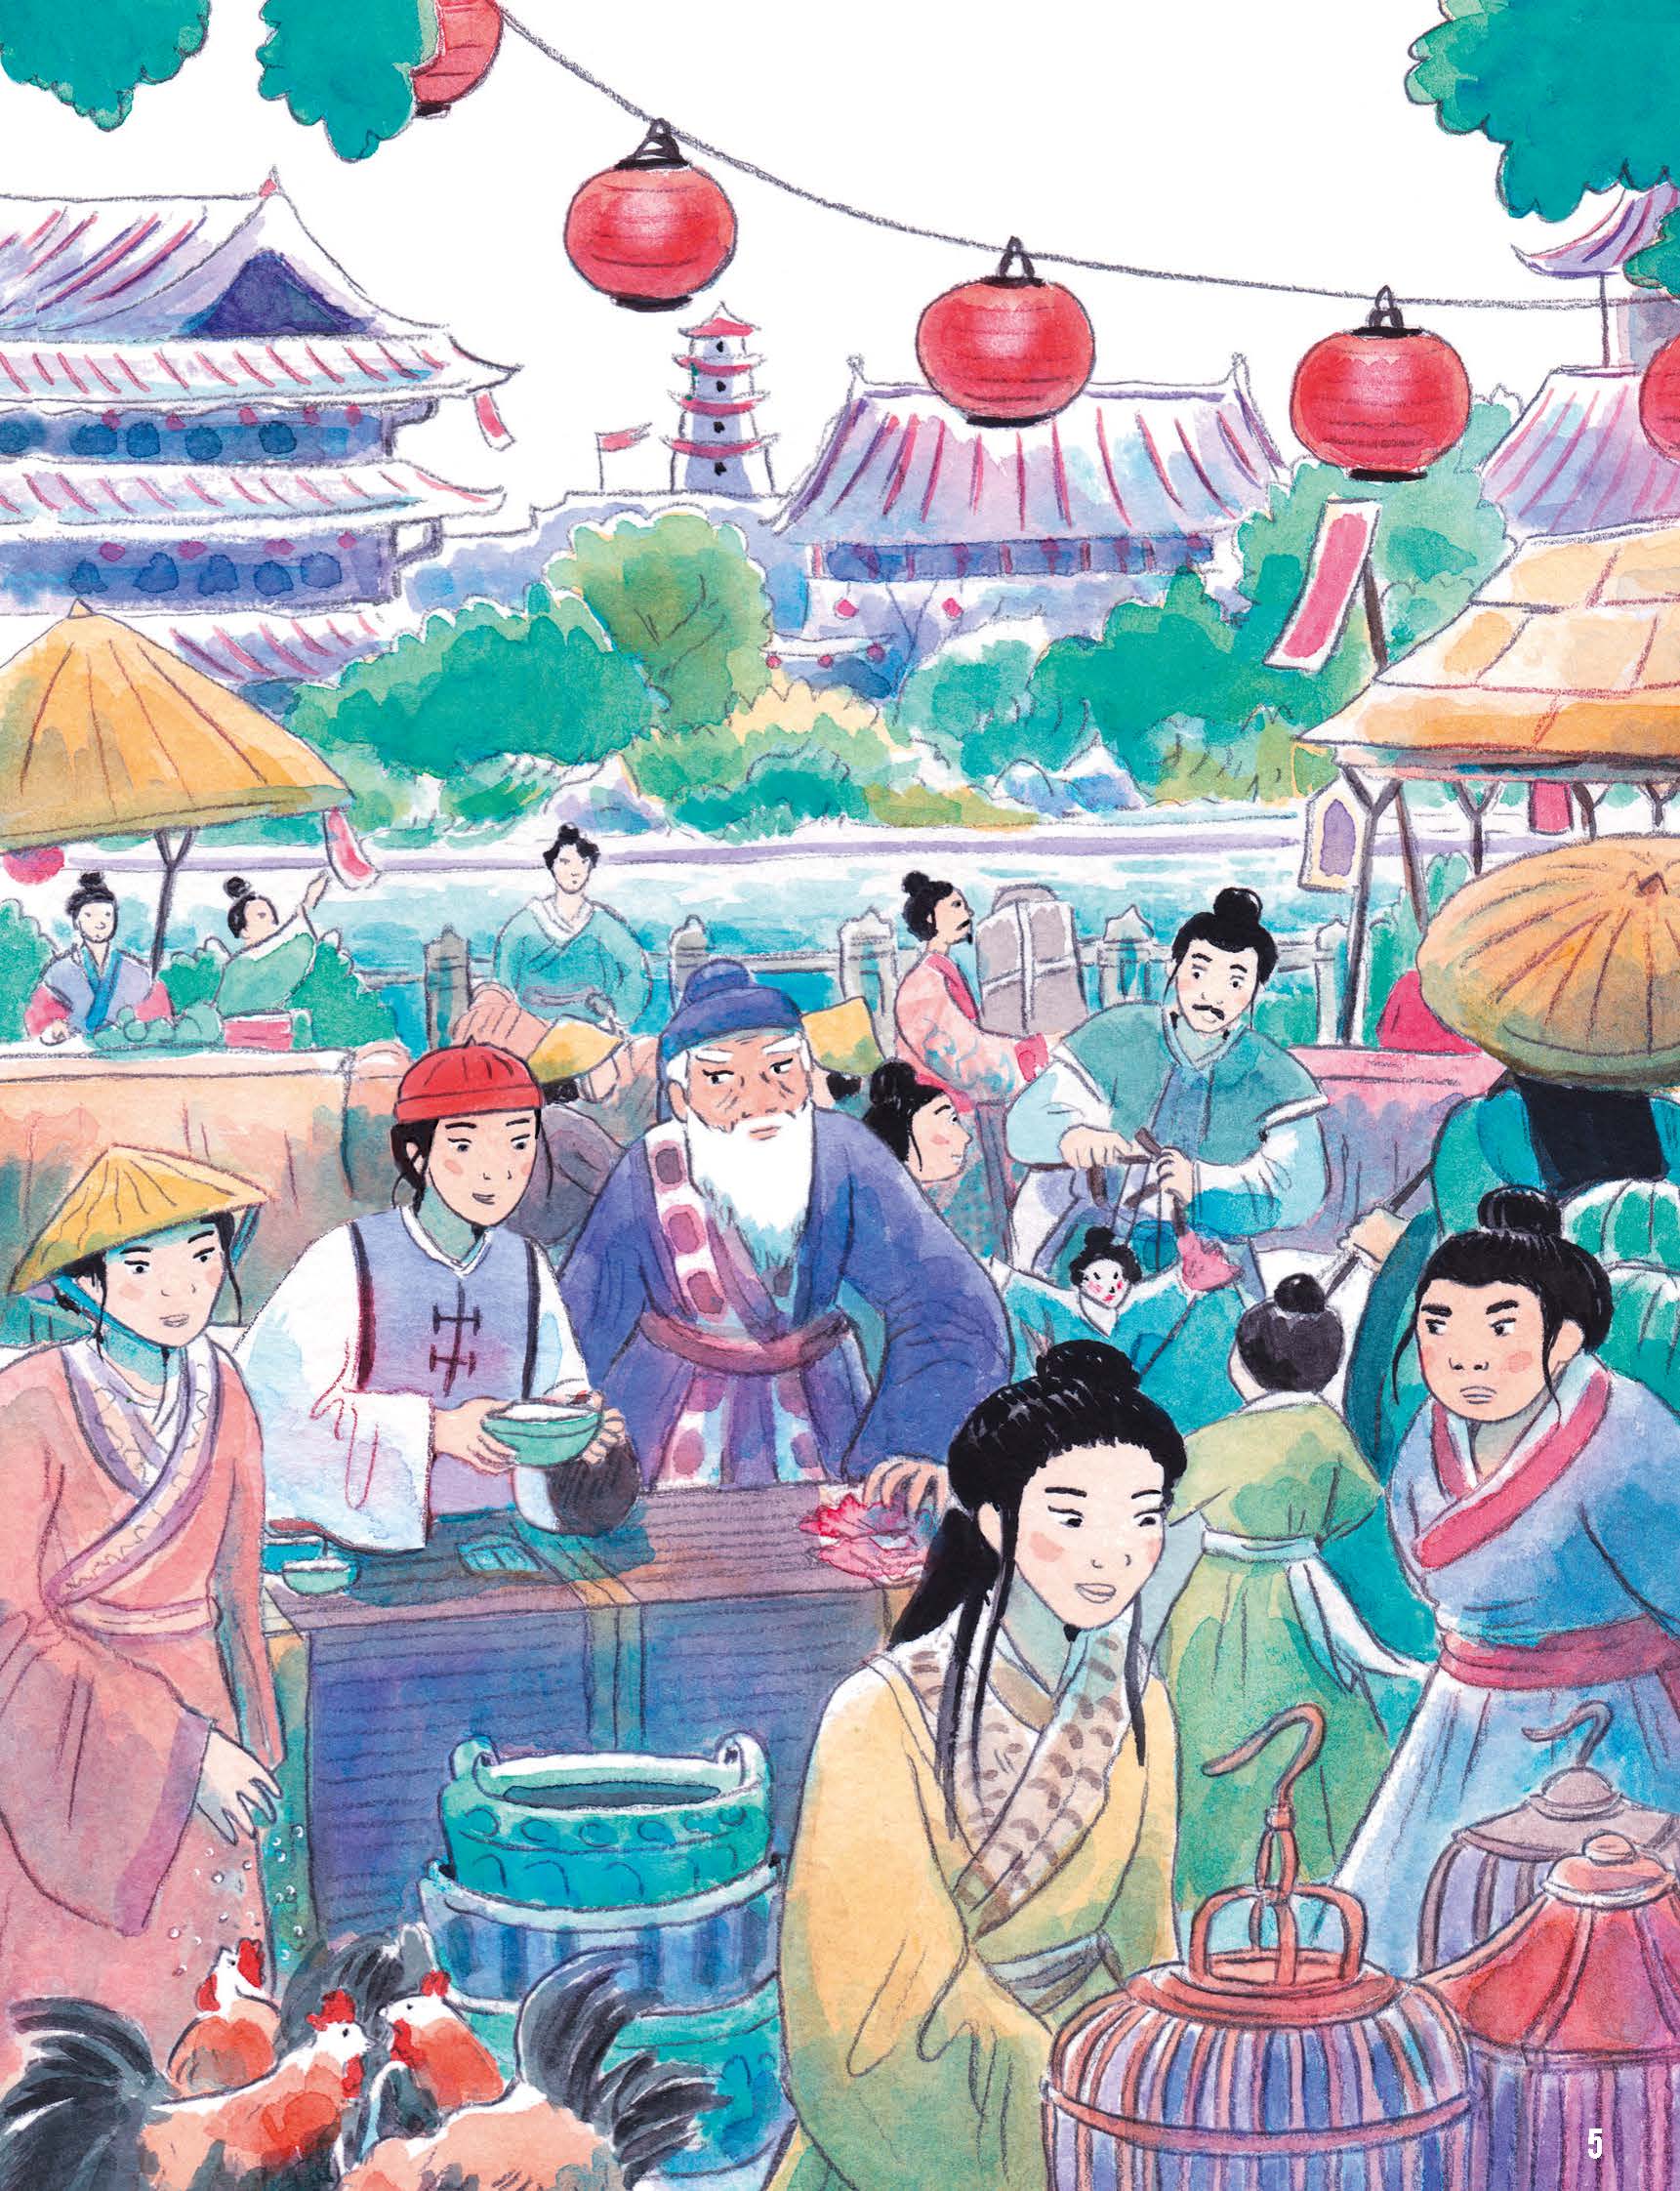 La Veritable Histoire De Bao-De, Marchand Au Temps De La Chine Imperiale